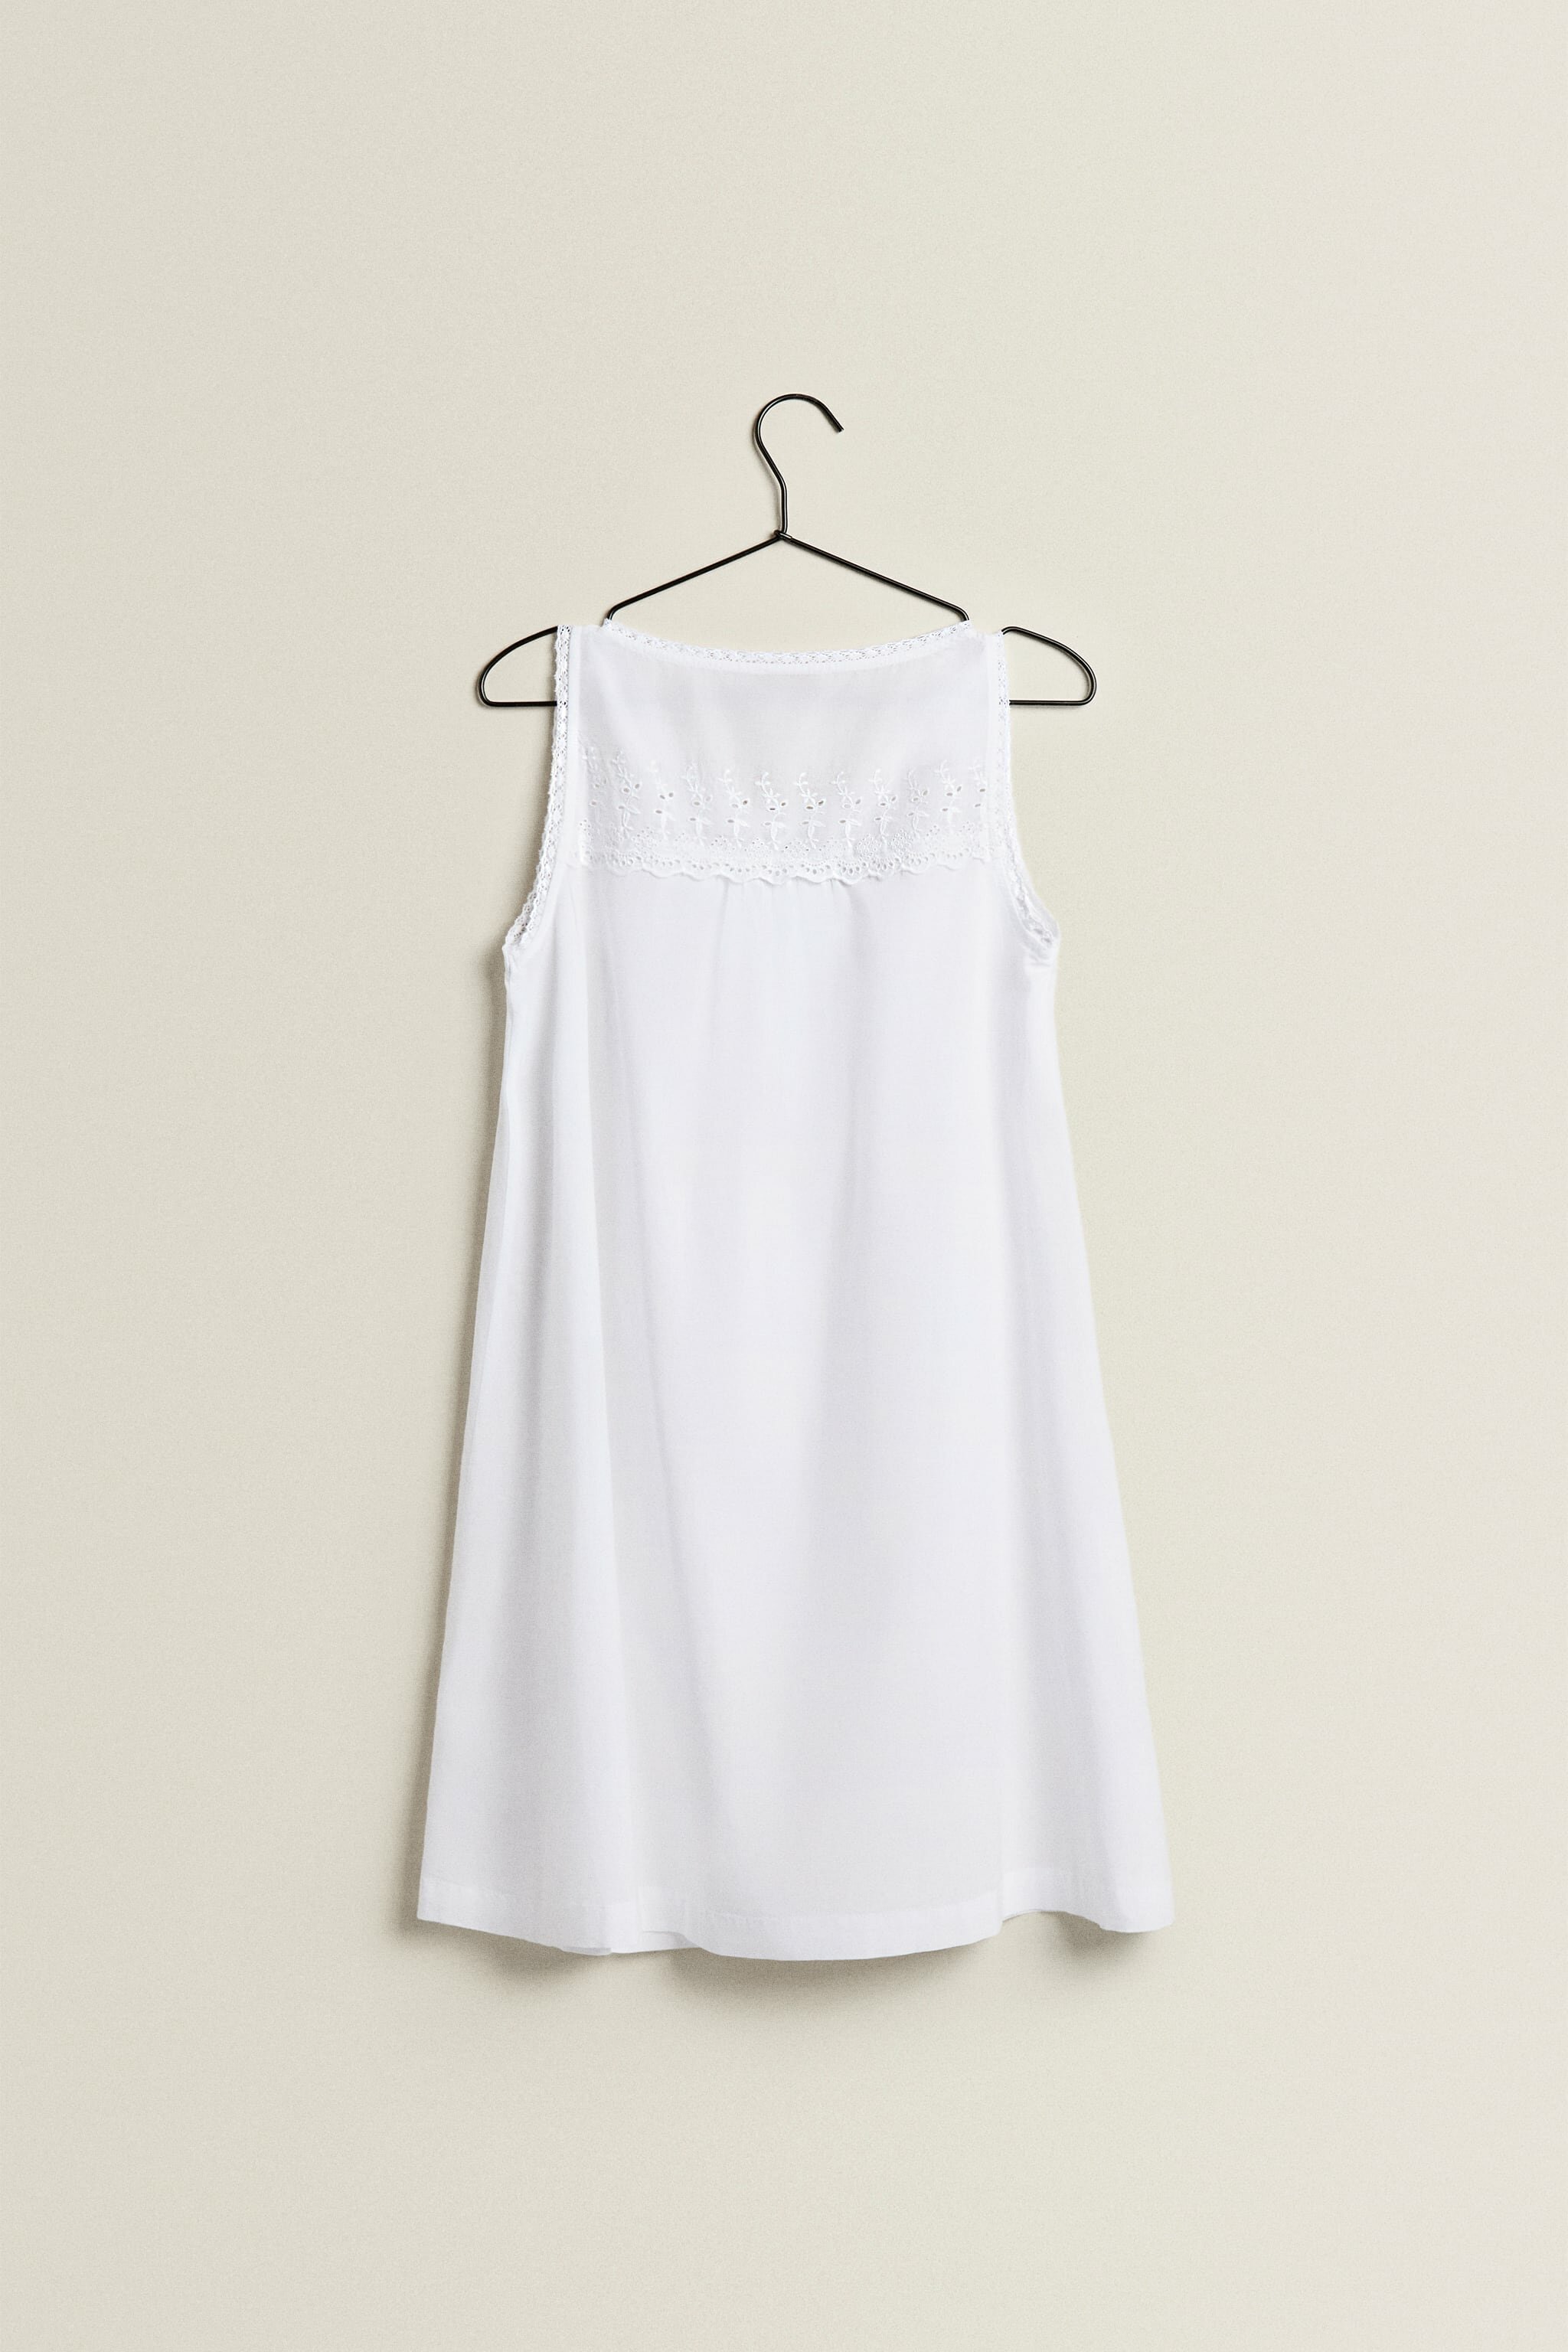 Пижама, ночная сорочка женская ZARAHOME, белый, XL - фотография № 2